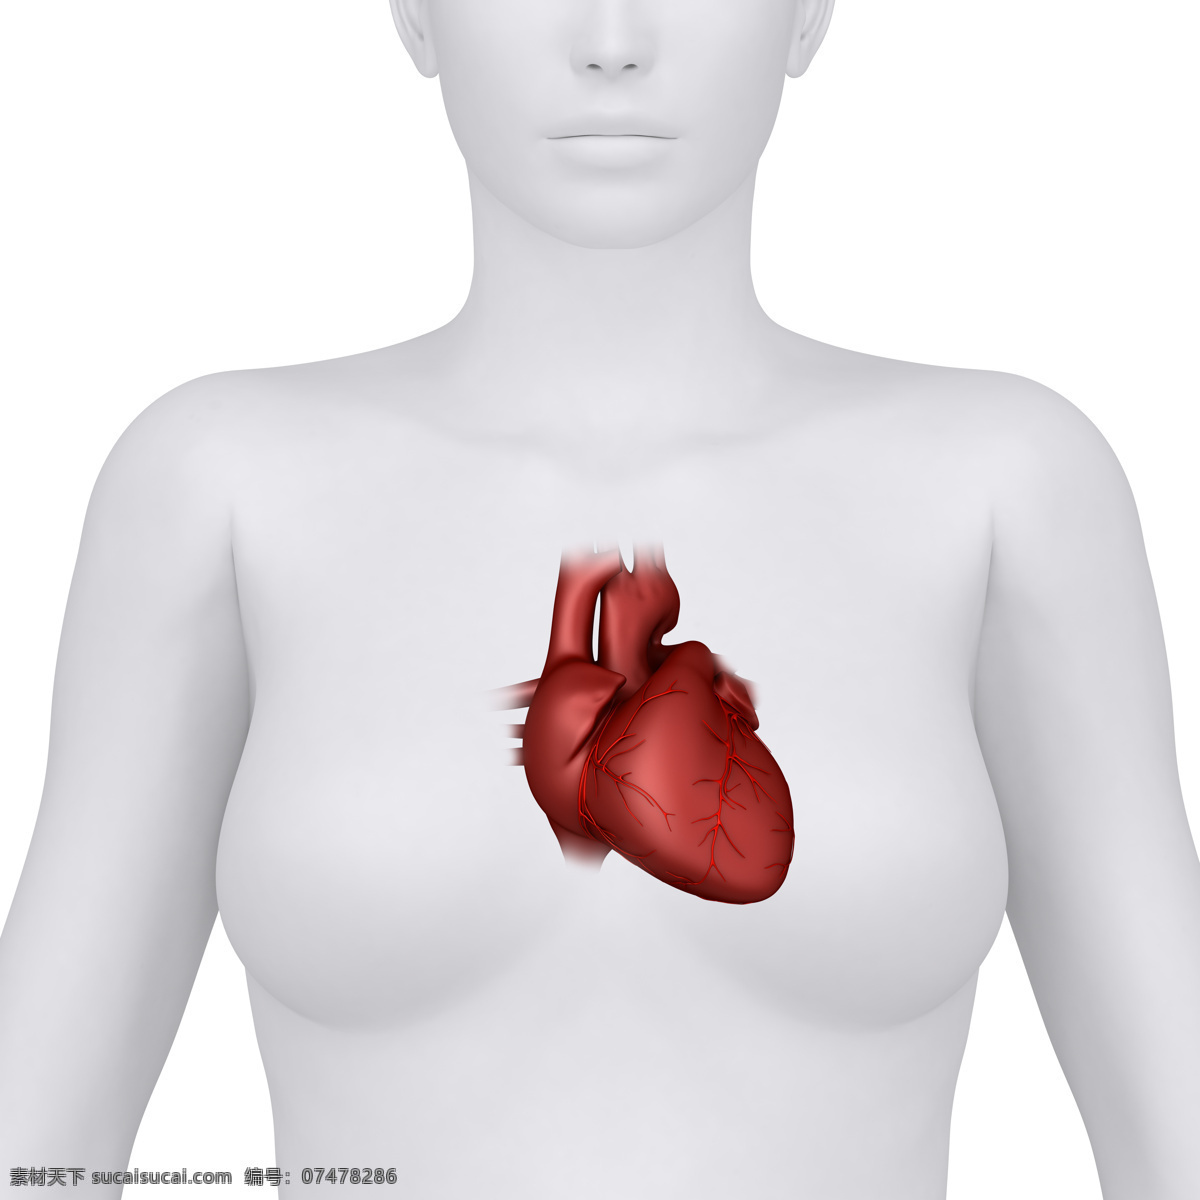 女性 人体 心脏 器官 女性器官 心脏器官 人体器官 医疗科学 医学 人体器官图 人物图片